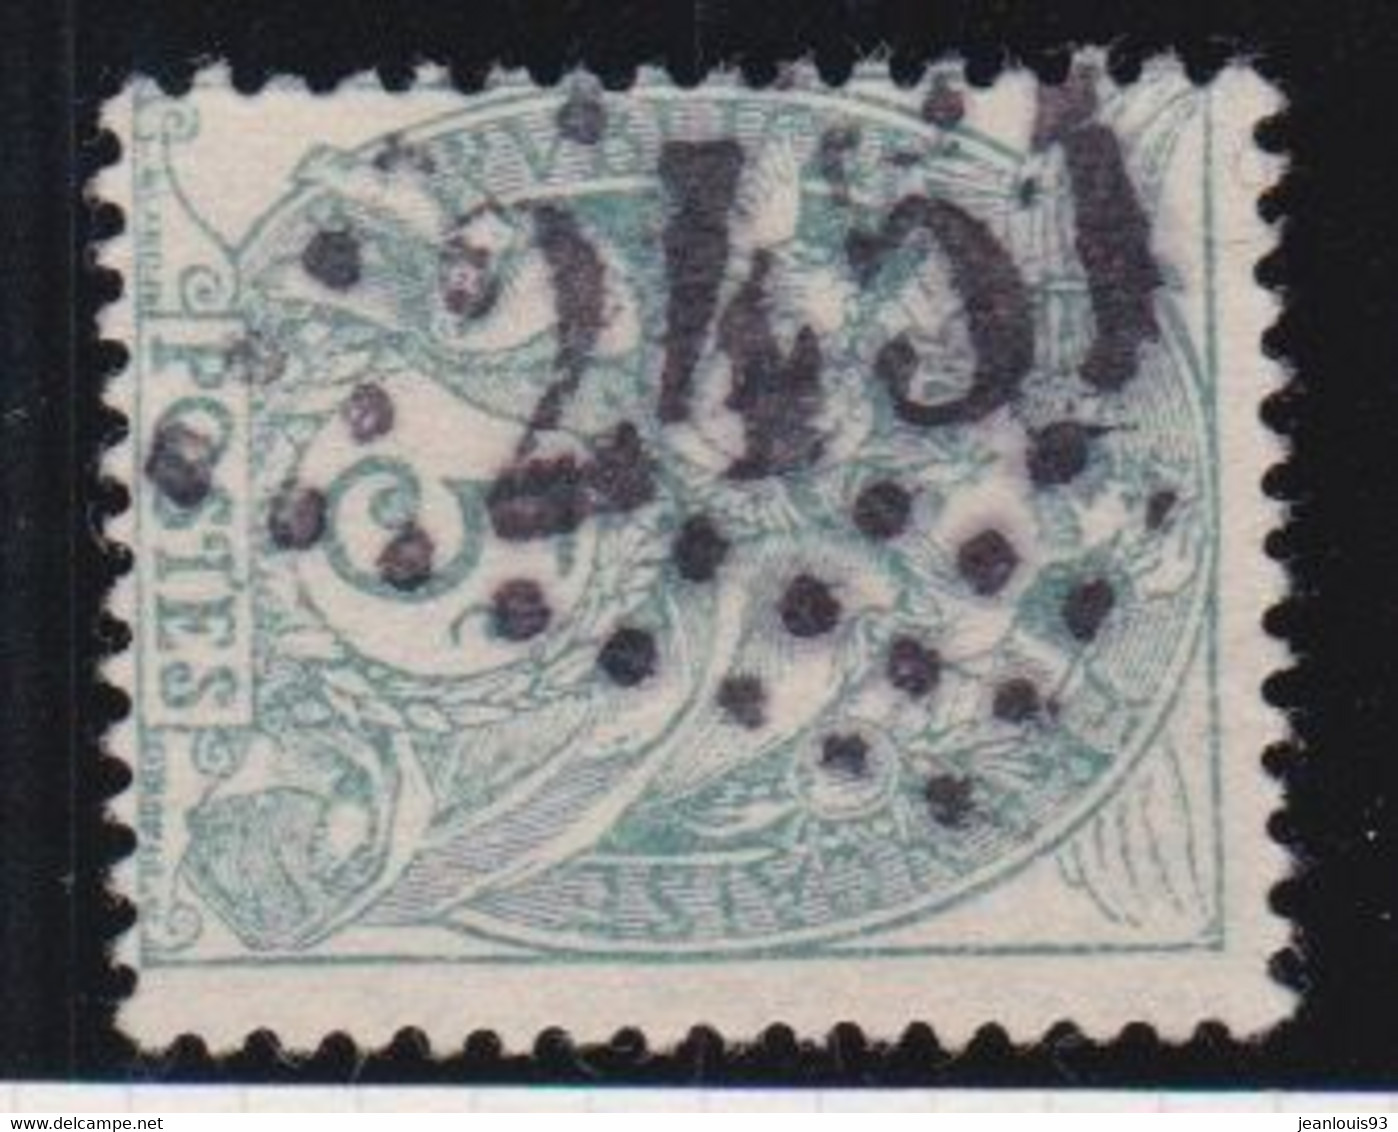 FRANCE - CACHET JOUR DE L'AN GC GROS CHIFFRES 2451 SUR 107 TYPE BLANC - Used Stamps